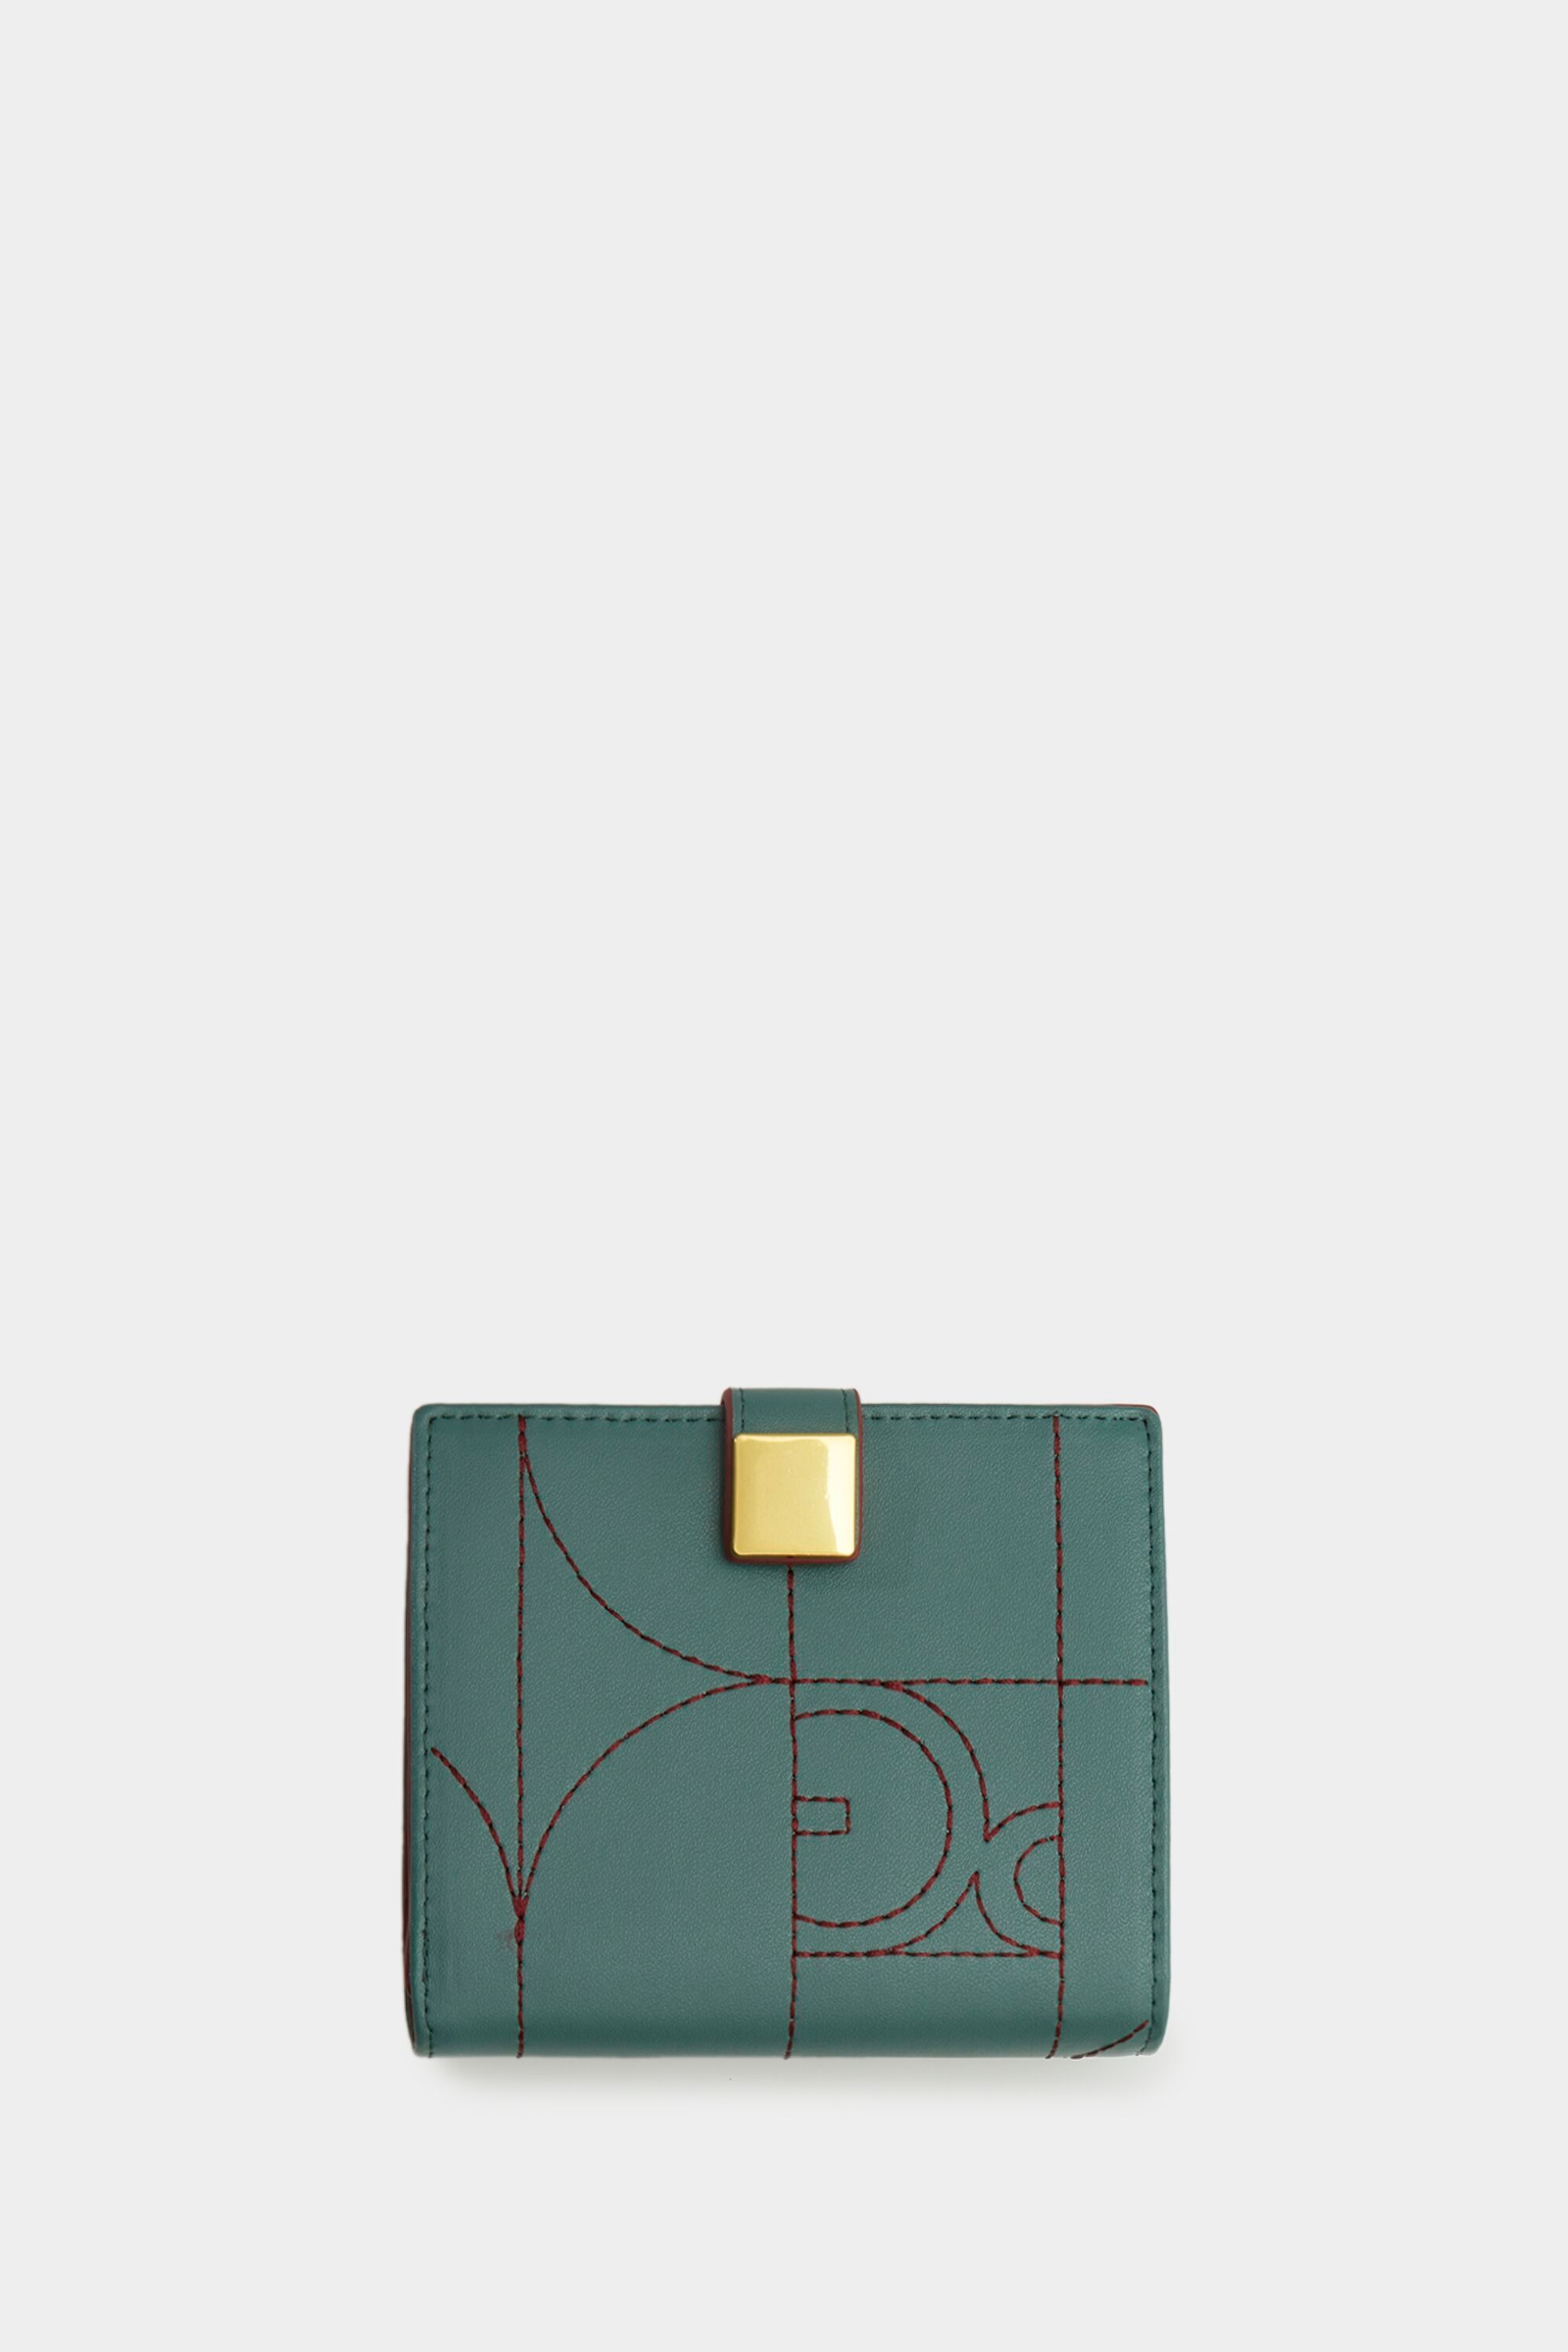 Bauhaus Japanese wallet